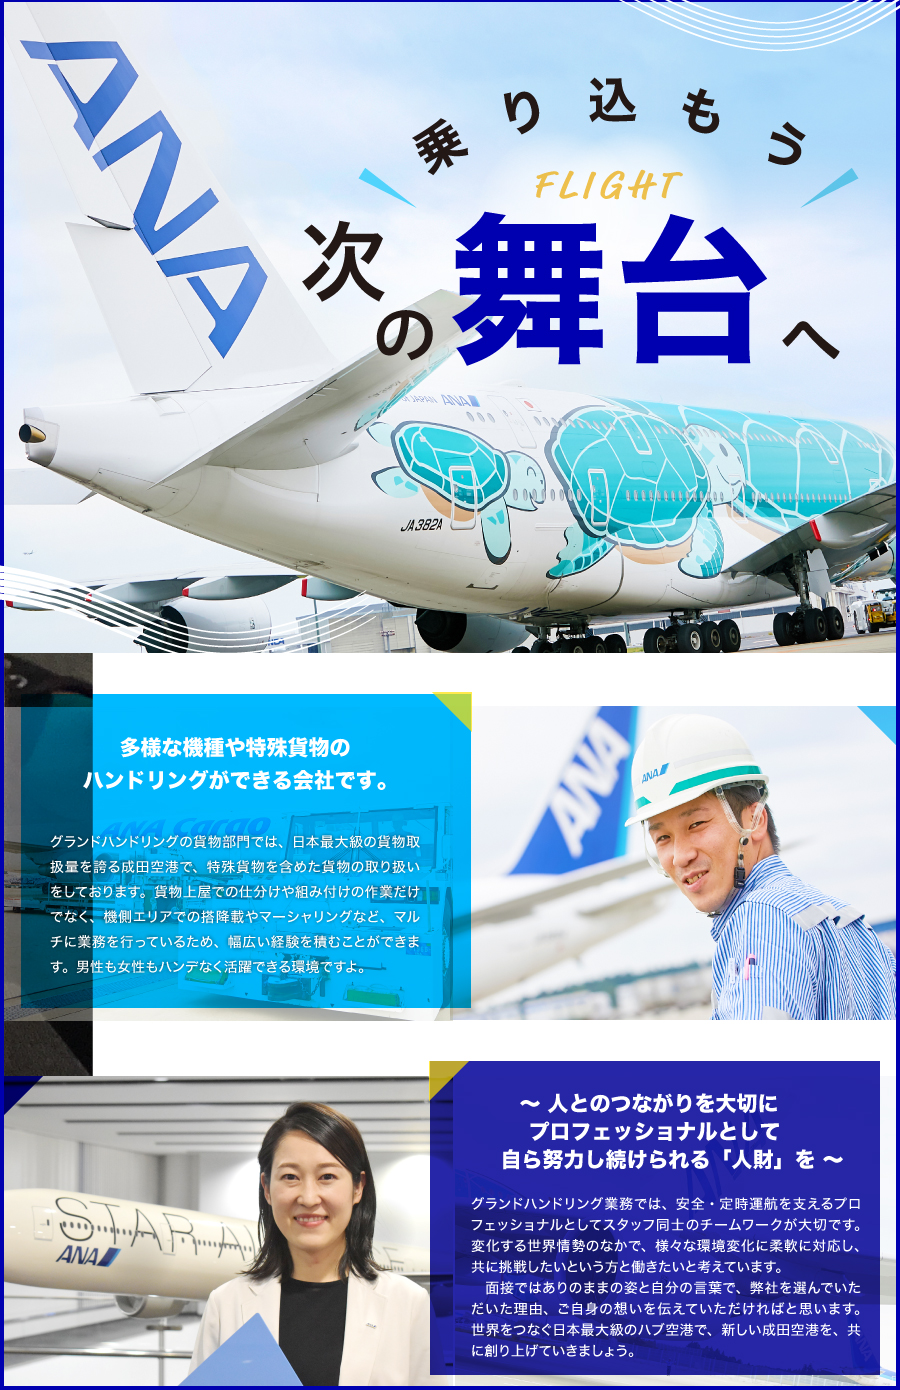 ANA成田エアポートサービス株式会社からのメッセージ